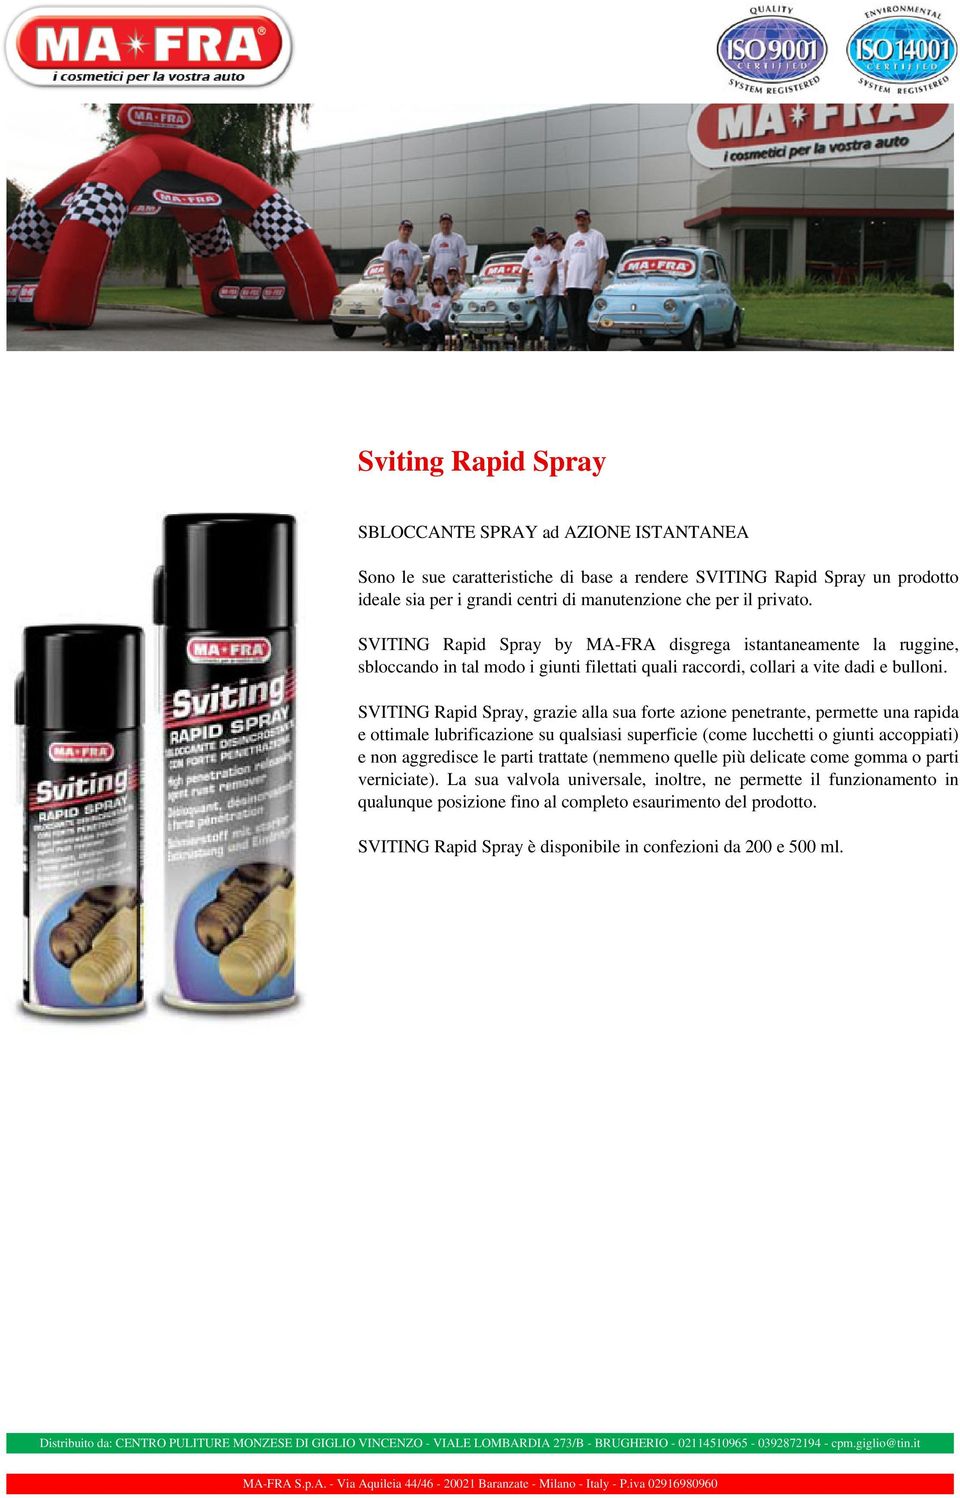 SVITING Rapid Spray, grazie alla sua forte azione penetrante, permette una rapida e ottimale lubrificazione su qualsiasi superficie (come lucchetti o giunti accoppiati) e non aggredisce le parti